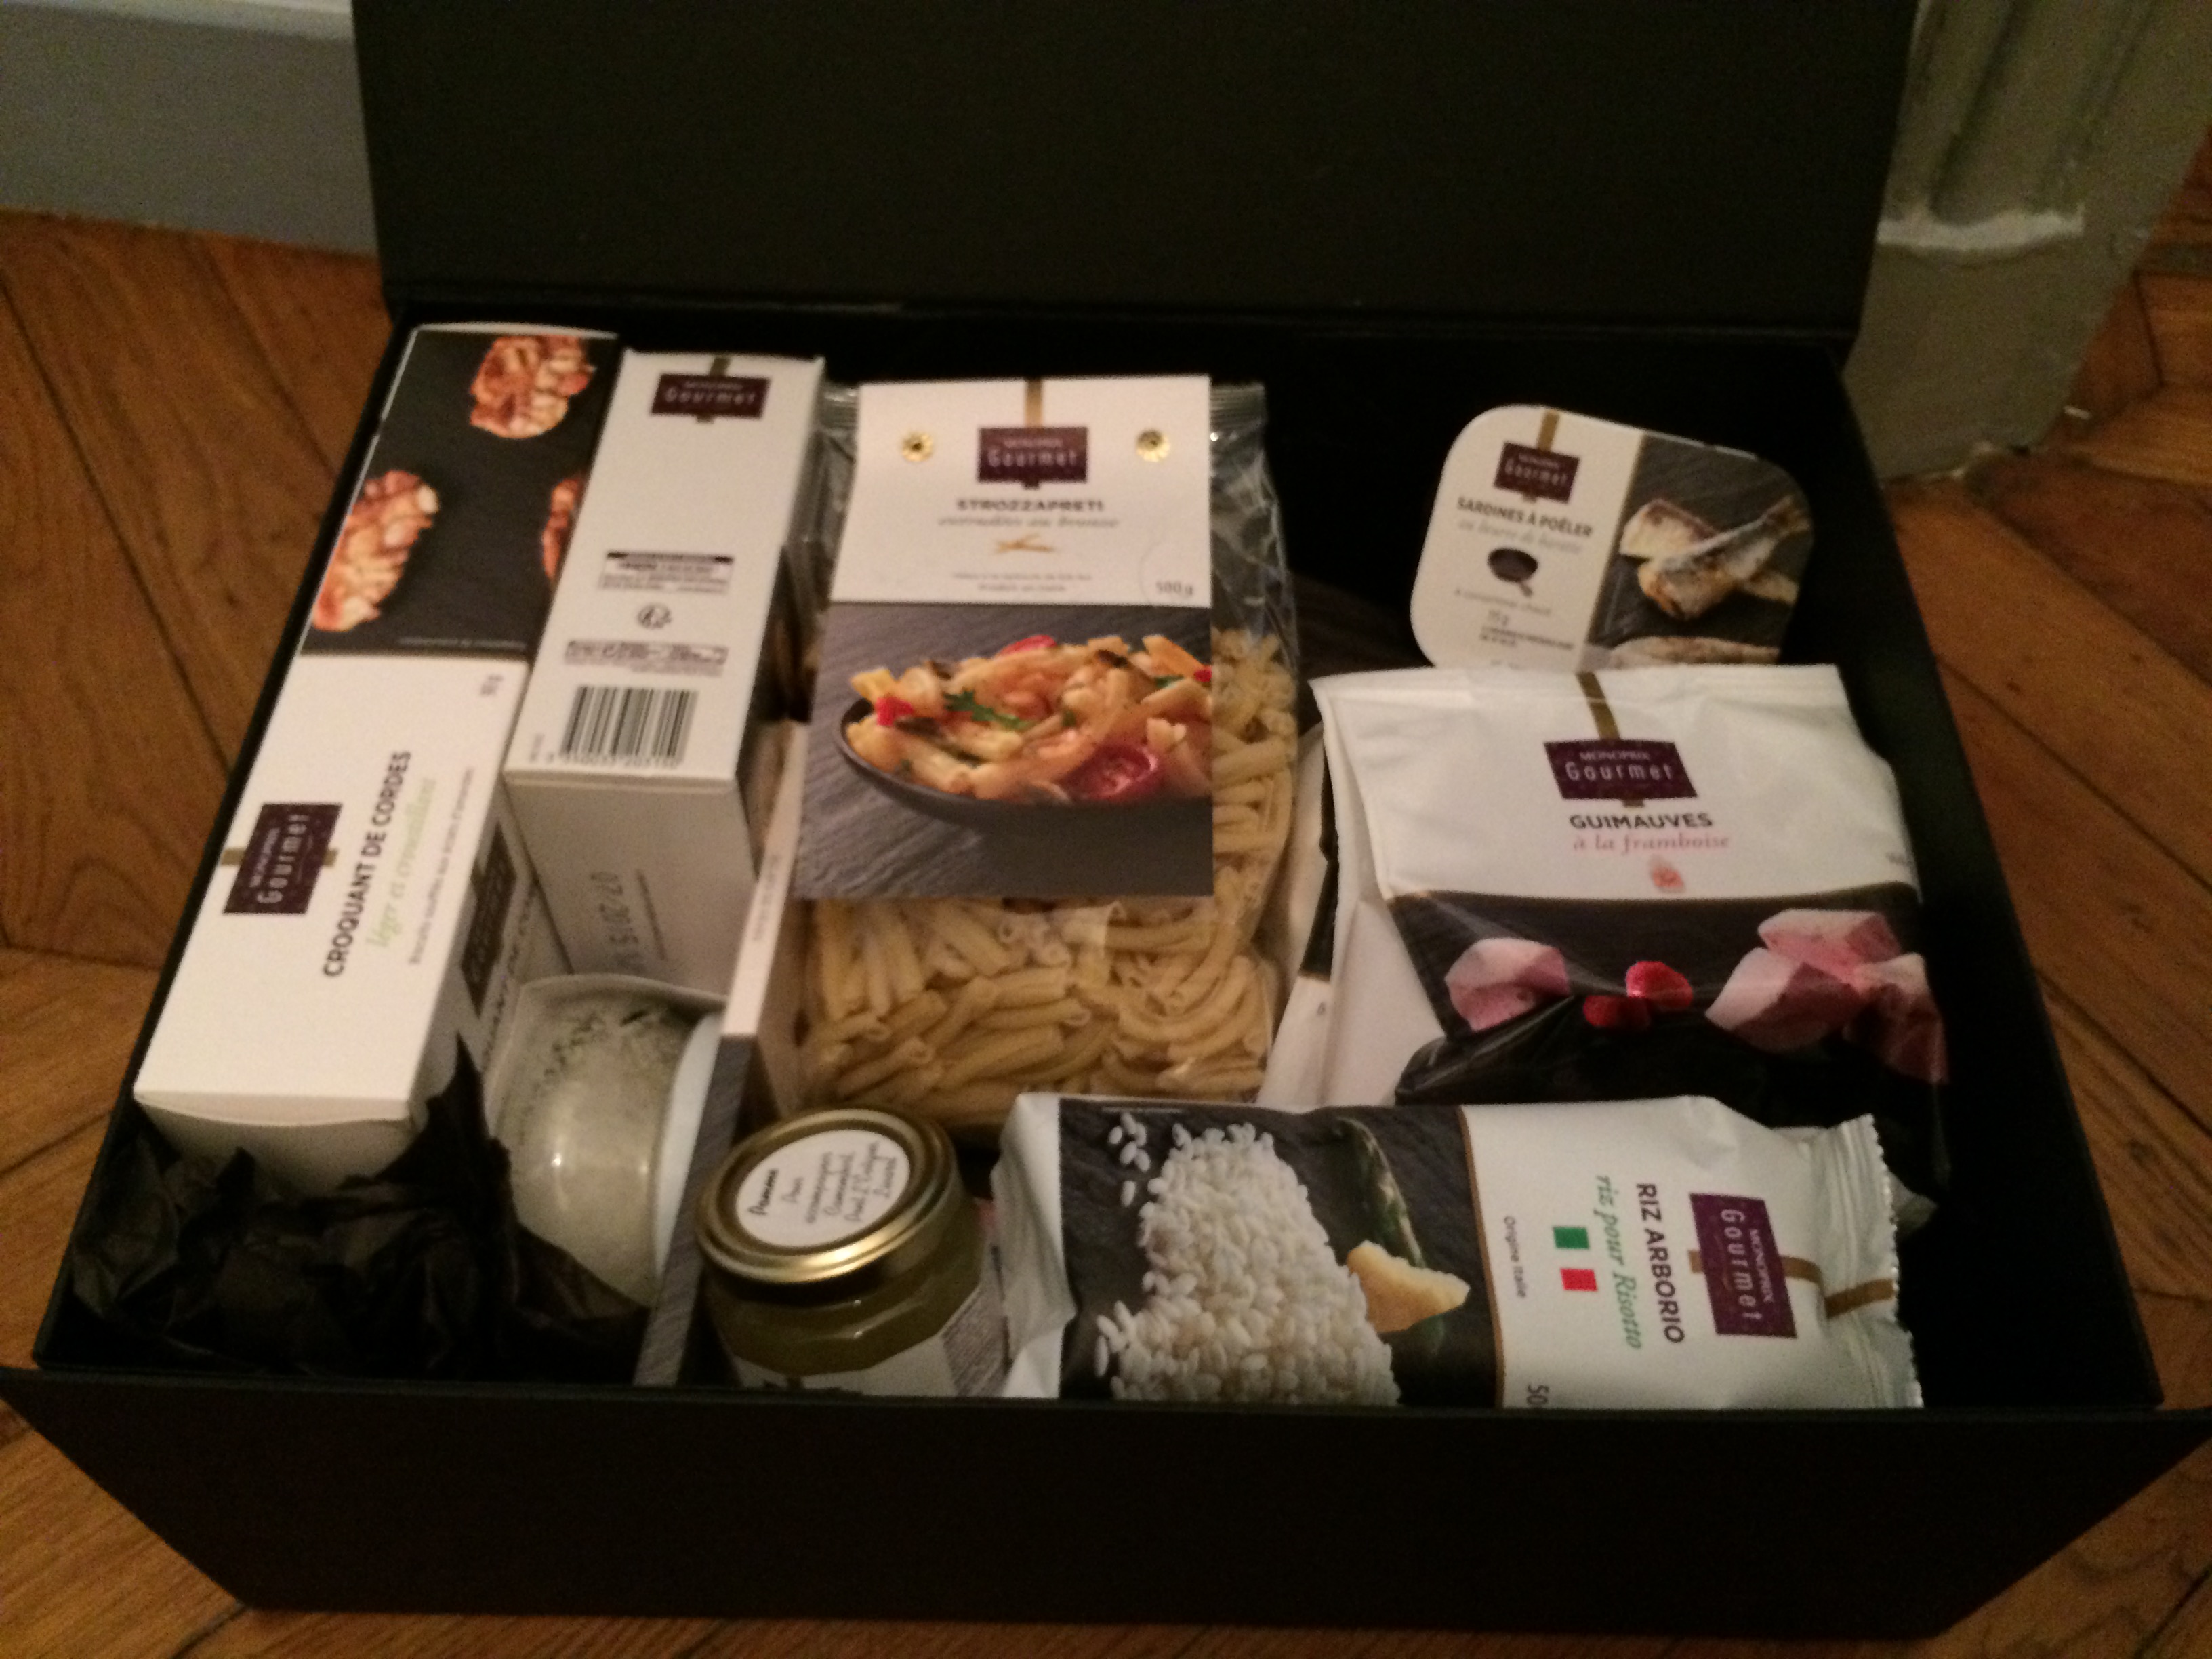 La Box Monoprix Gourmet [+Concours]